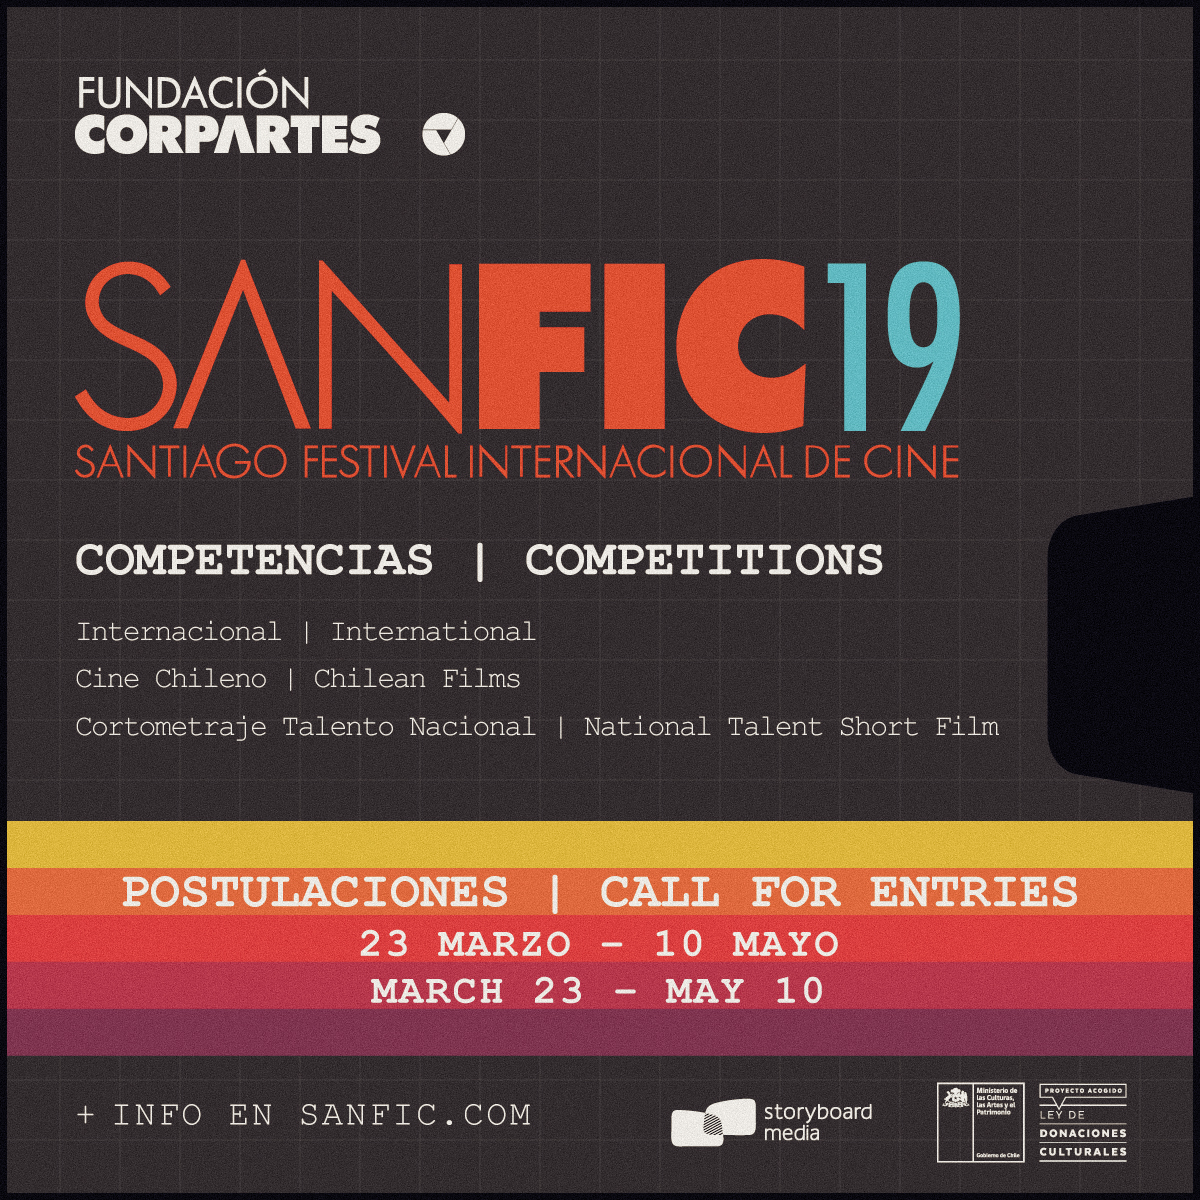 SANFIC abre la convocatoria para postular a su 19º edición a realizarse entre el 20 y el 27 de agosto, presentada por Fundación CorpArtes